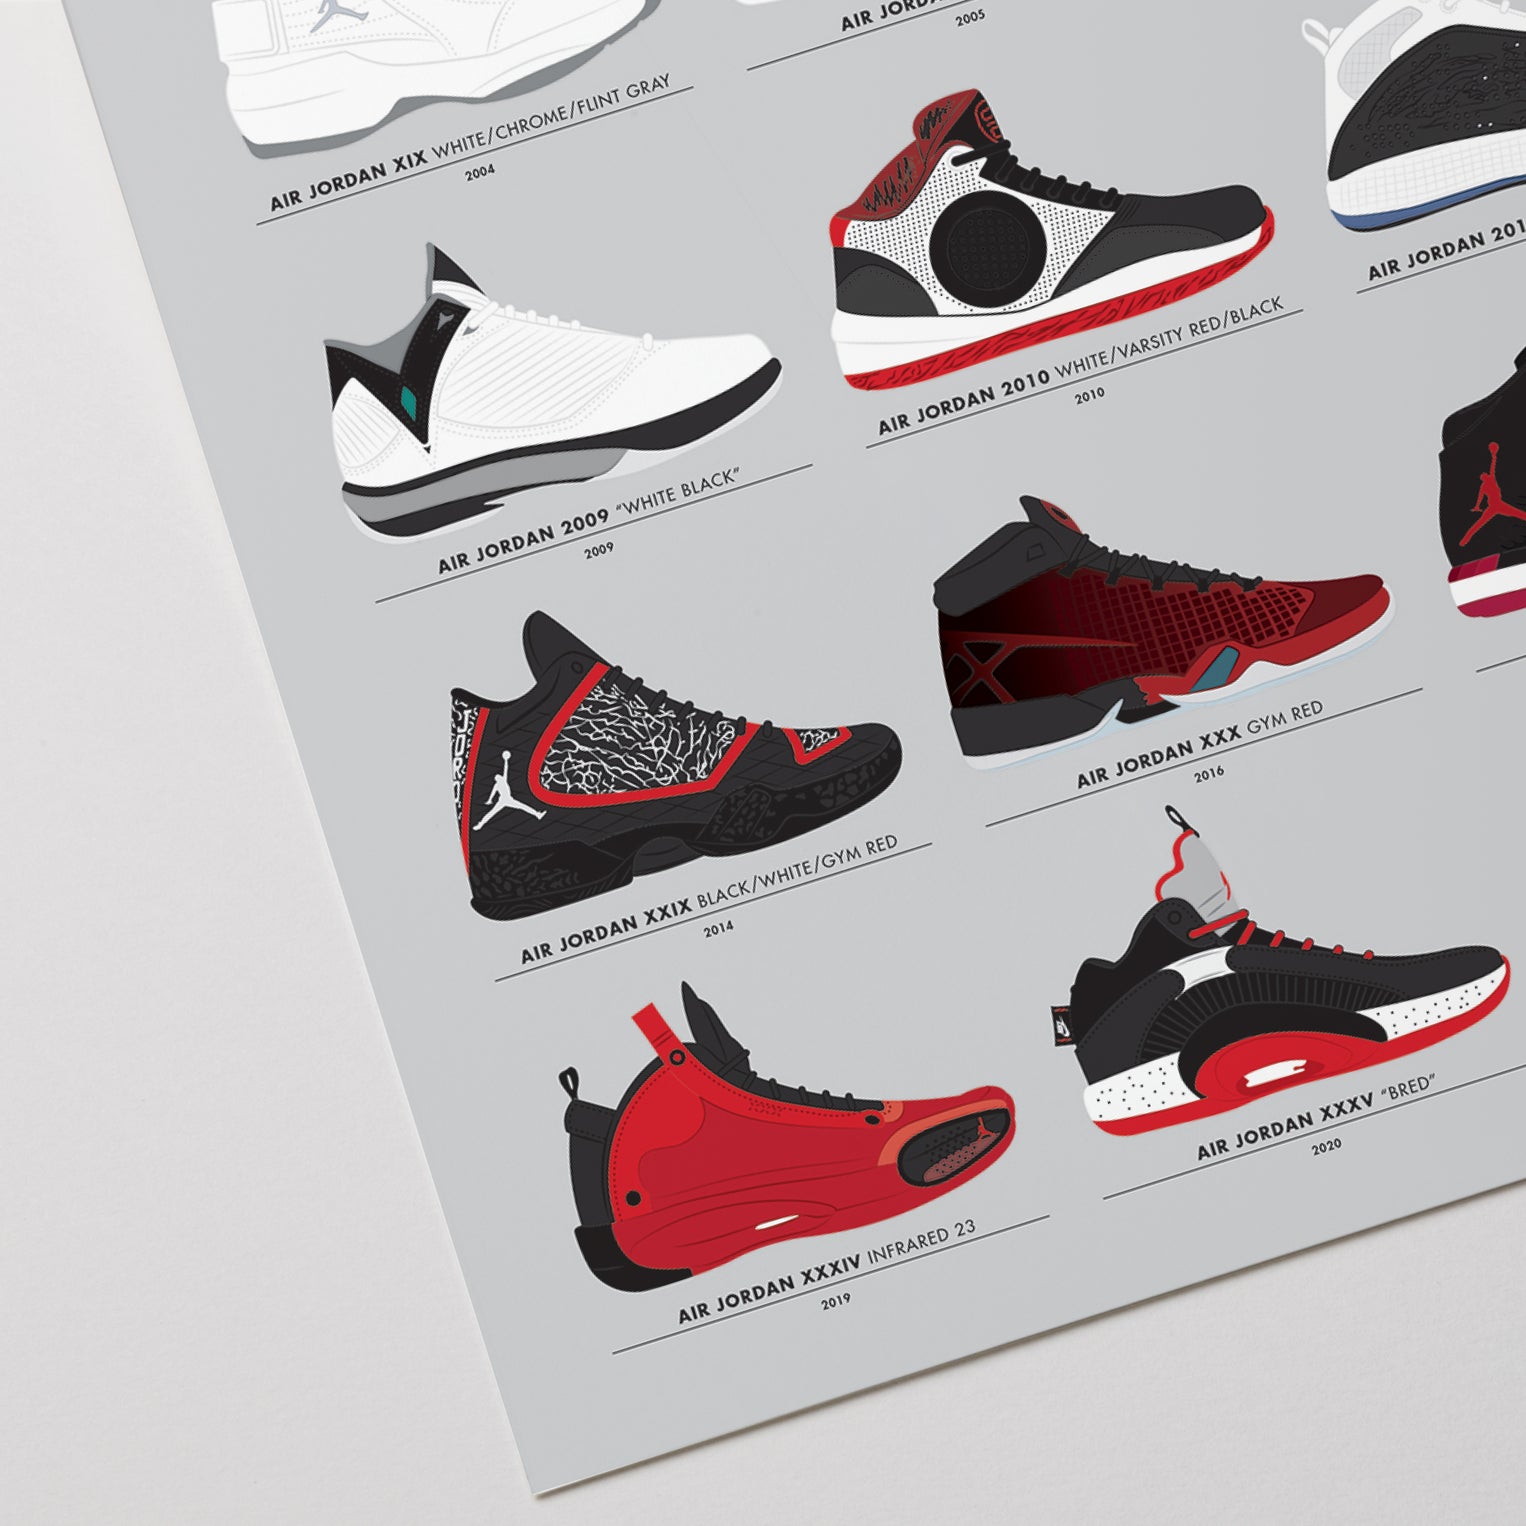 Air Jordan Series | Air jordans retro, Air jordan shoes, Jordans